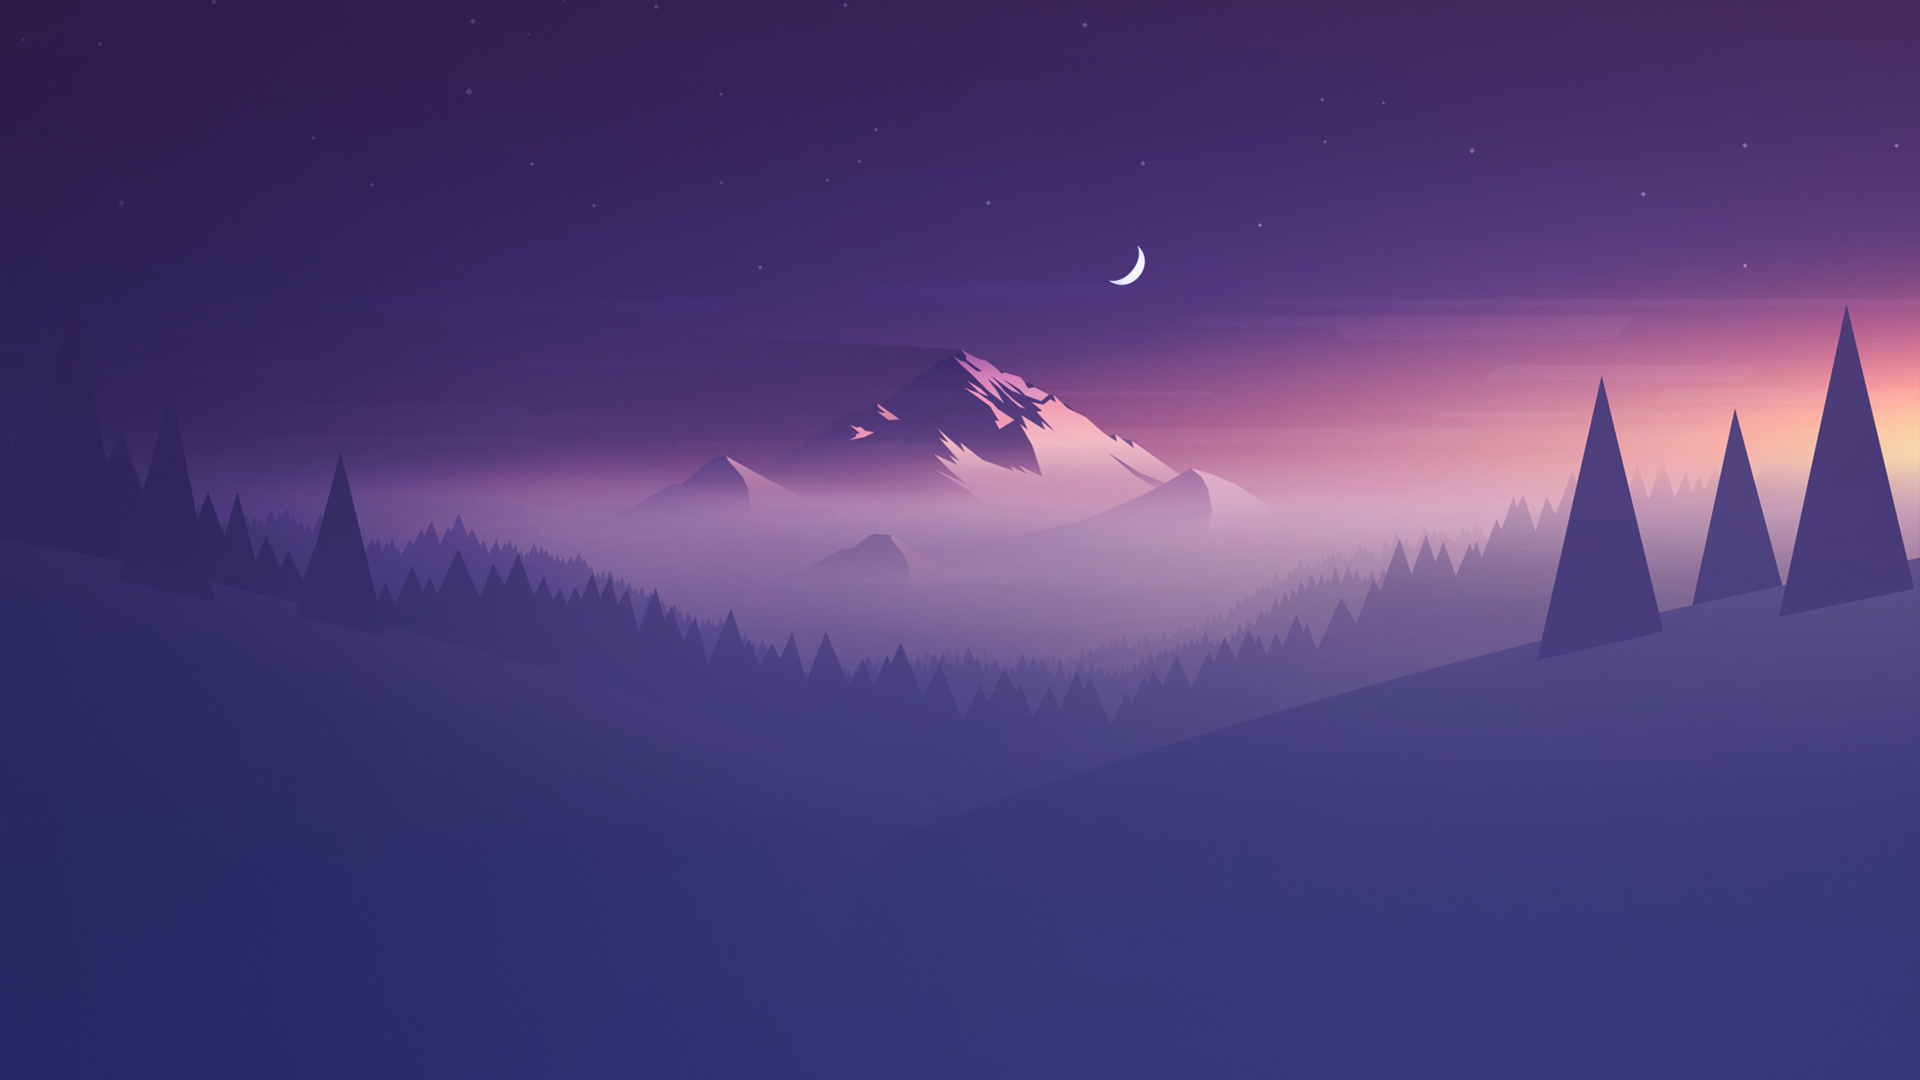 山，晚上，月亮，紫色的风景，简约桌面壁纸